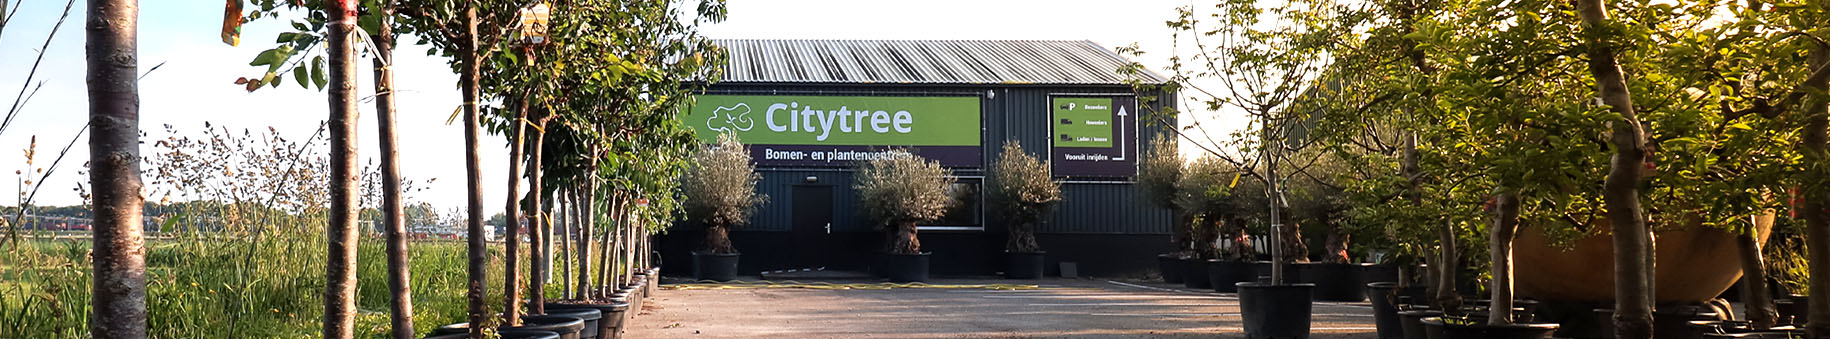 CityTree bomen- en plantencentrum in Heerjansdam